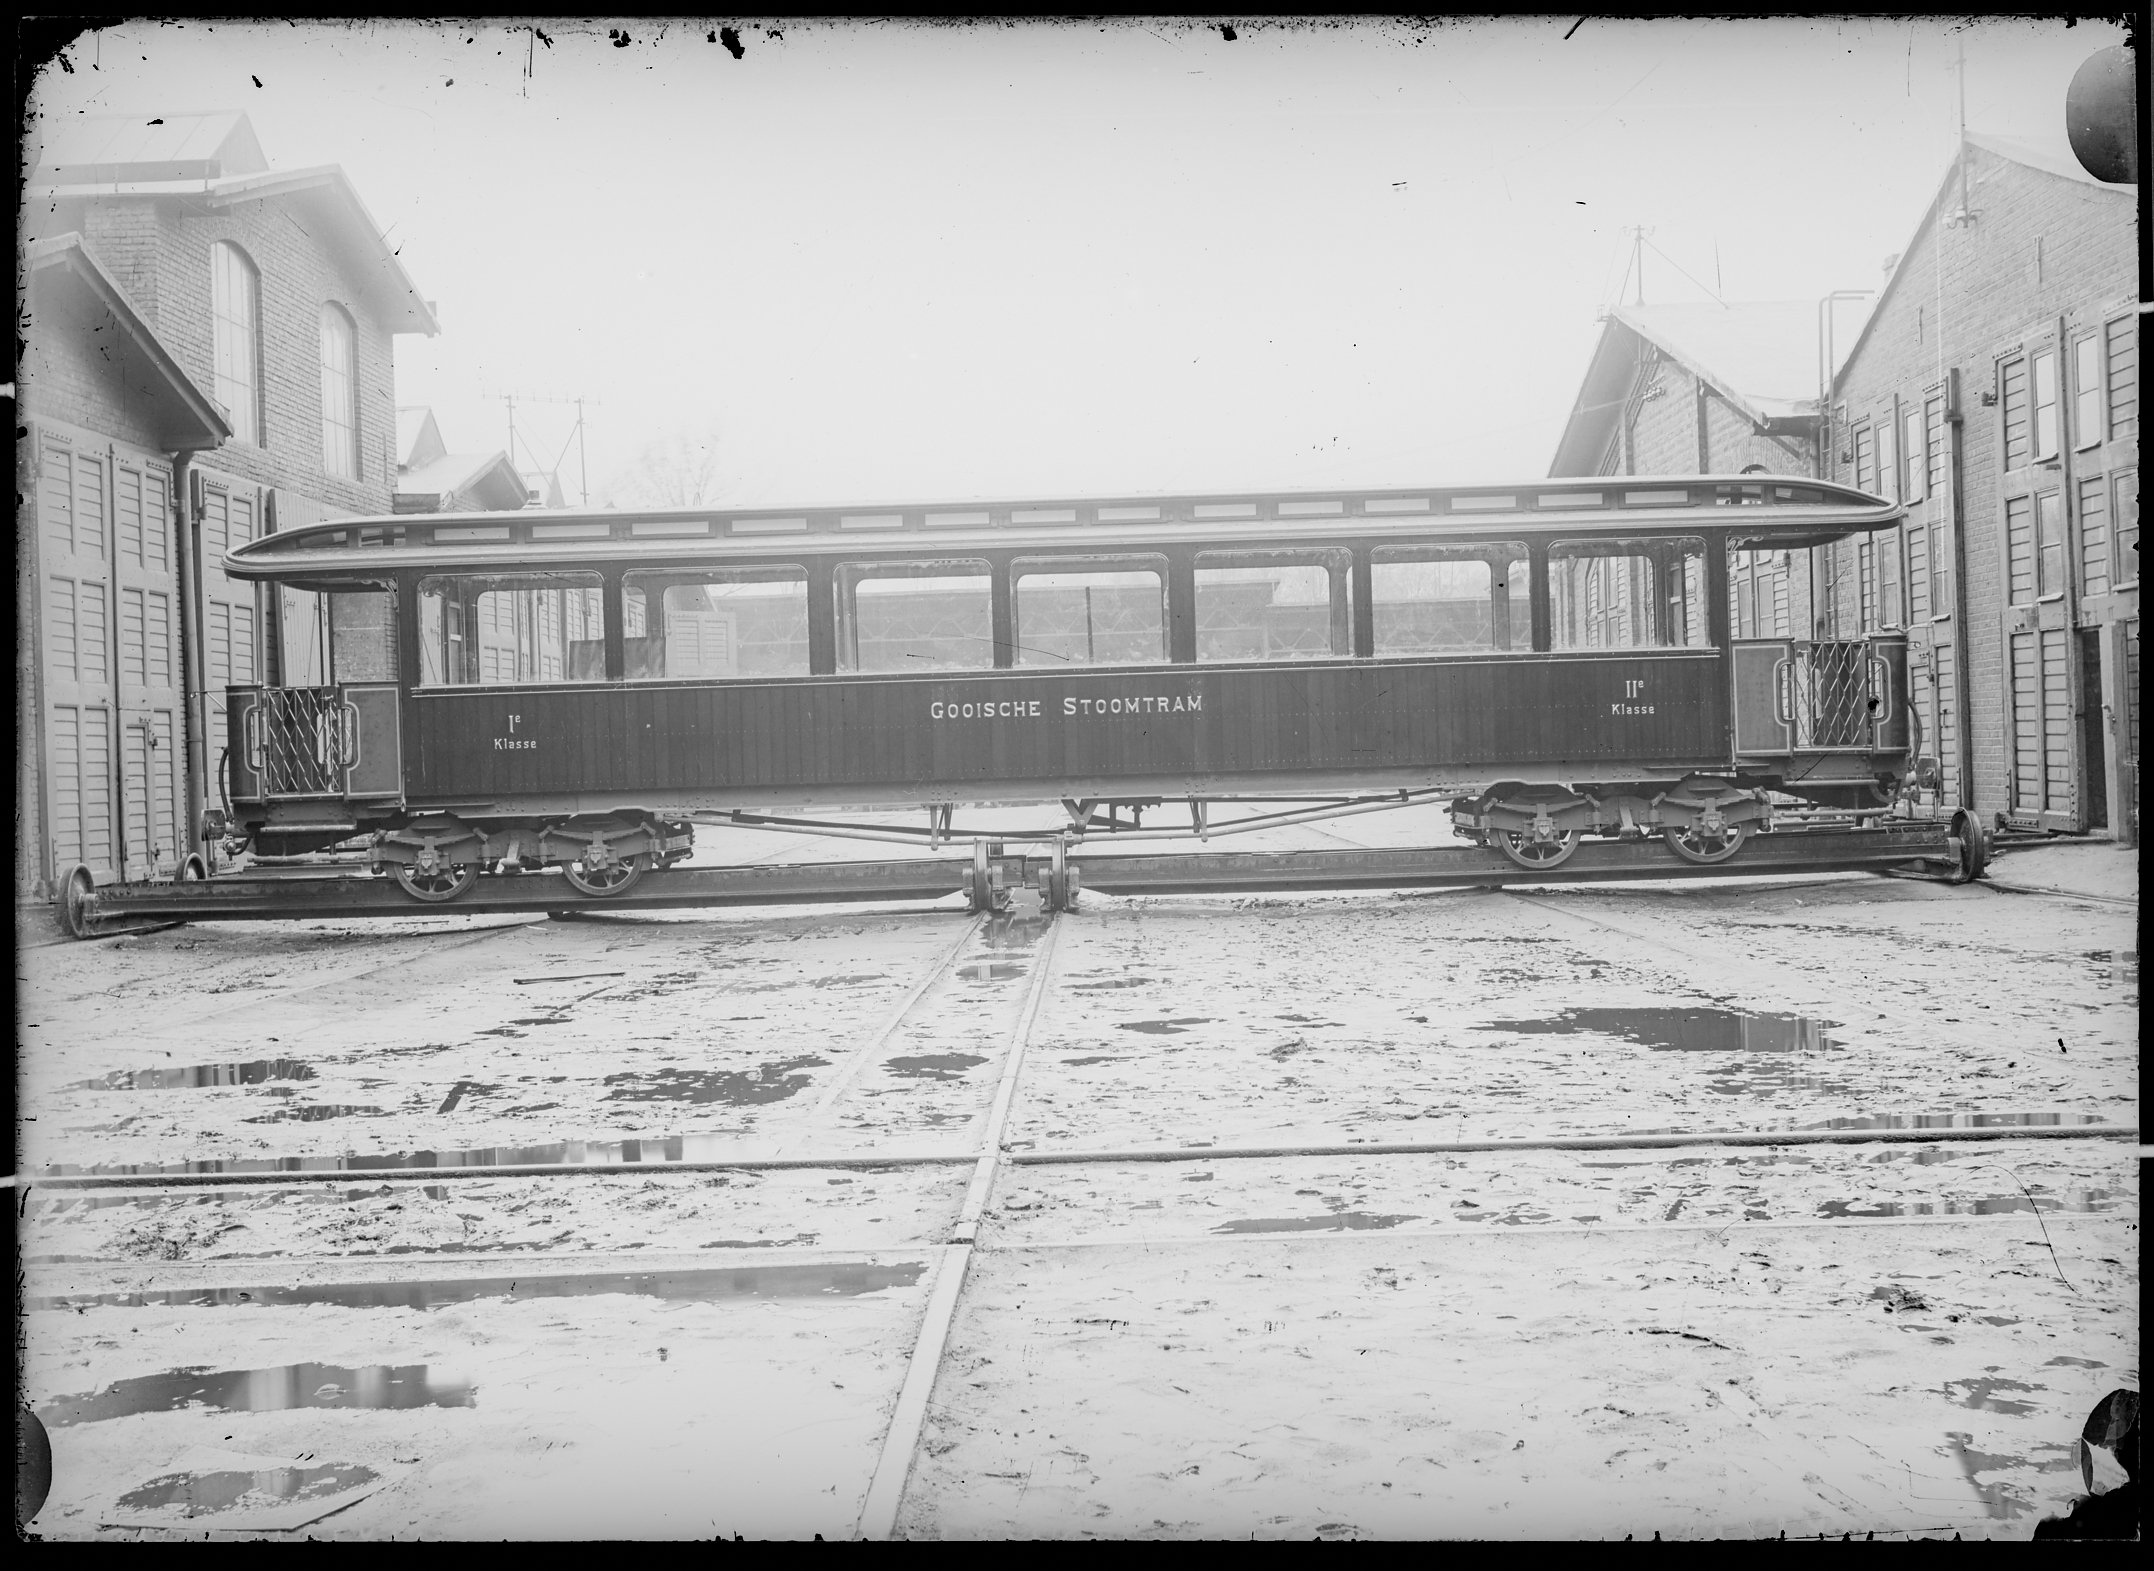 Fotografie: vierachsiger Durchgangswagen erster/zweiter Klasse, Gattung AB4i (Längsansicht), ohne Inneneinrichtung, 1904. Gooische Stoomtram, Amsterda (Verkehrsmuseum Dresden CC BY-NC-SA)